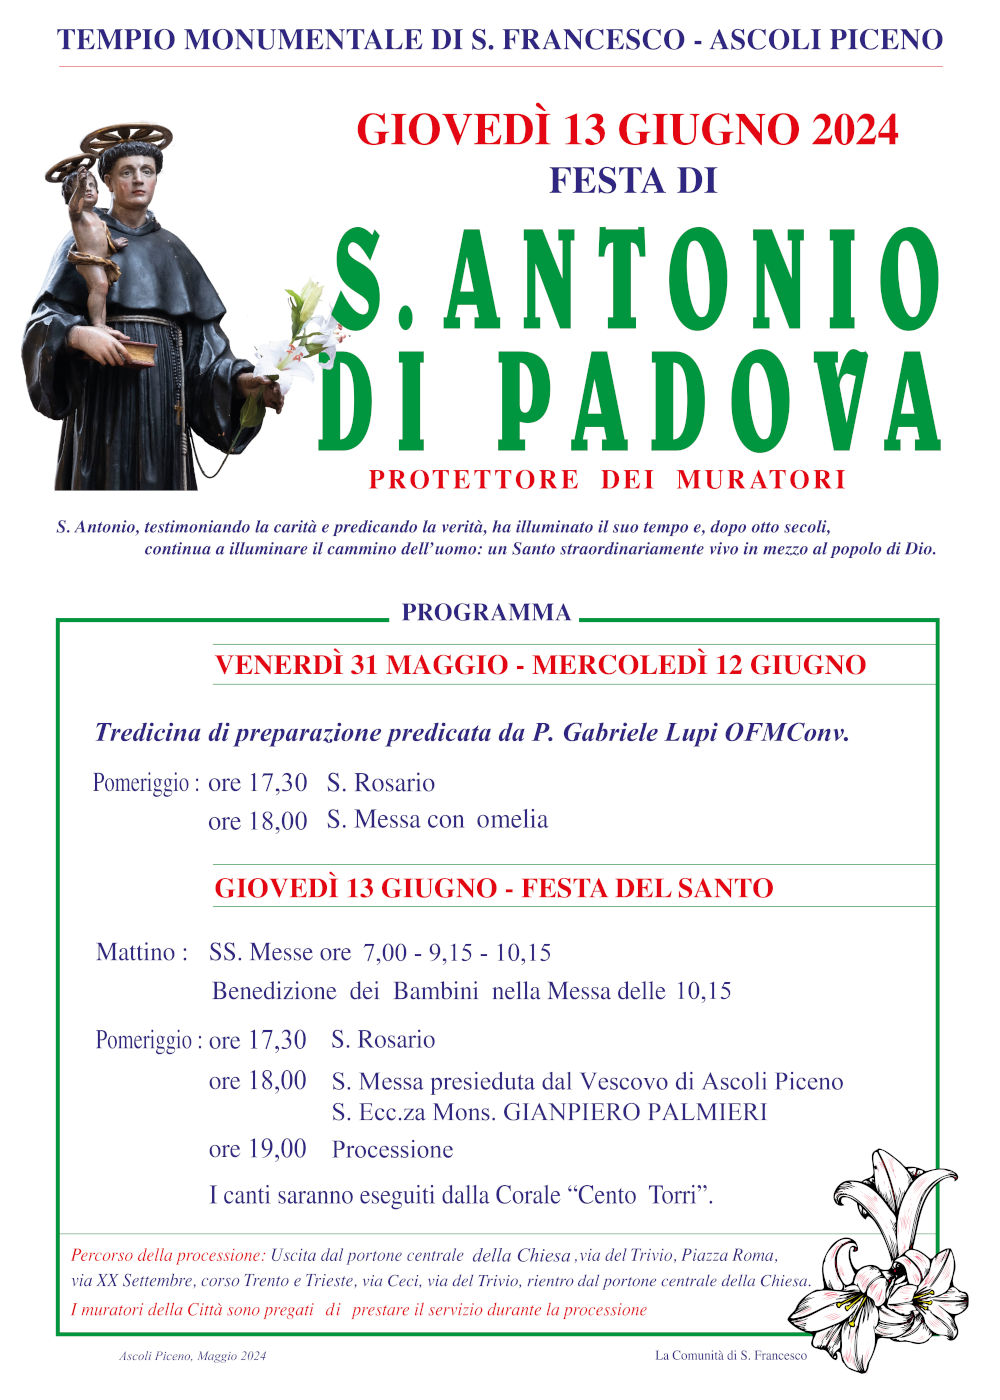 Festa di S. Antonio di Padova: tutti eventi nella Diocesi di Ascoli Piceno - locandina